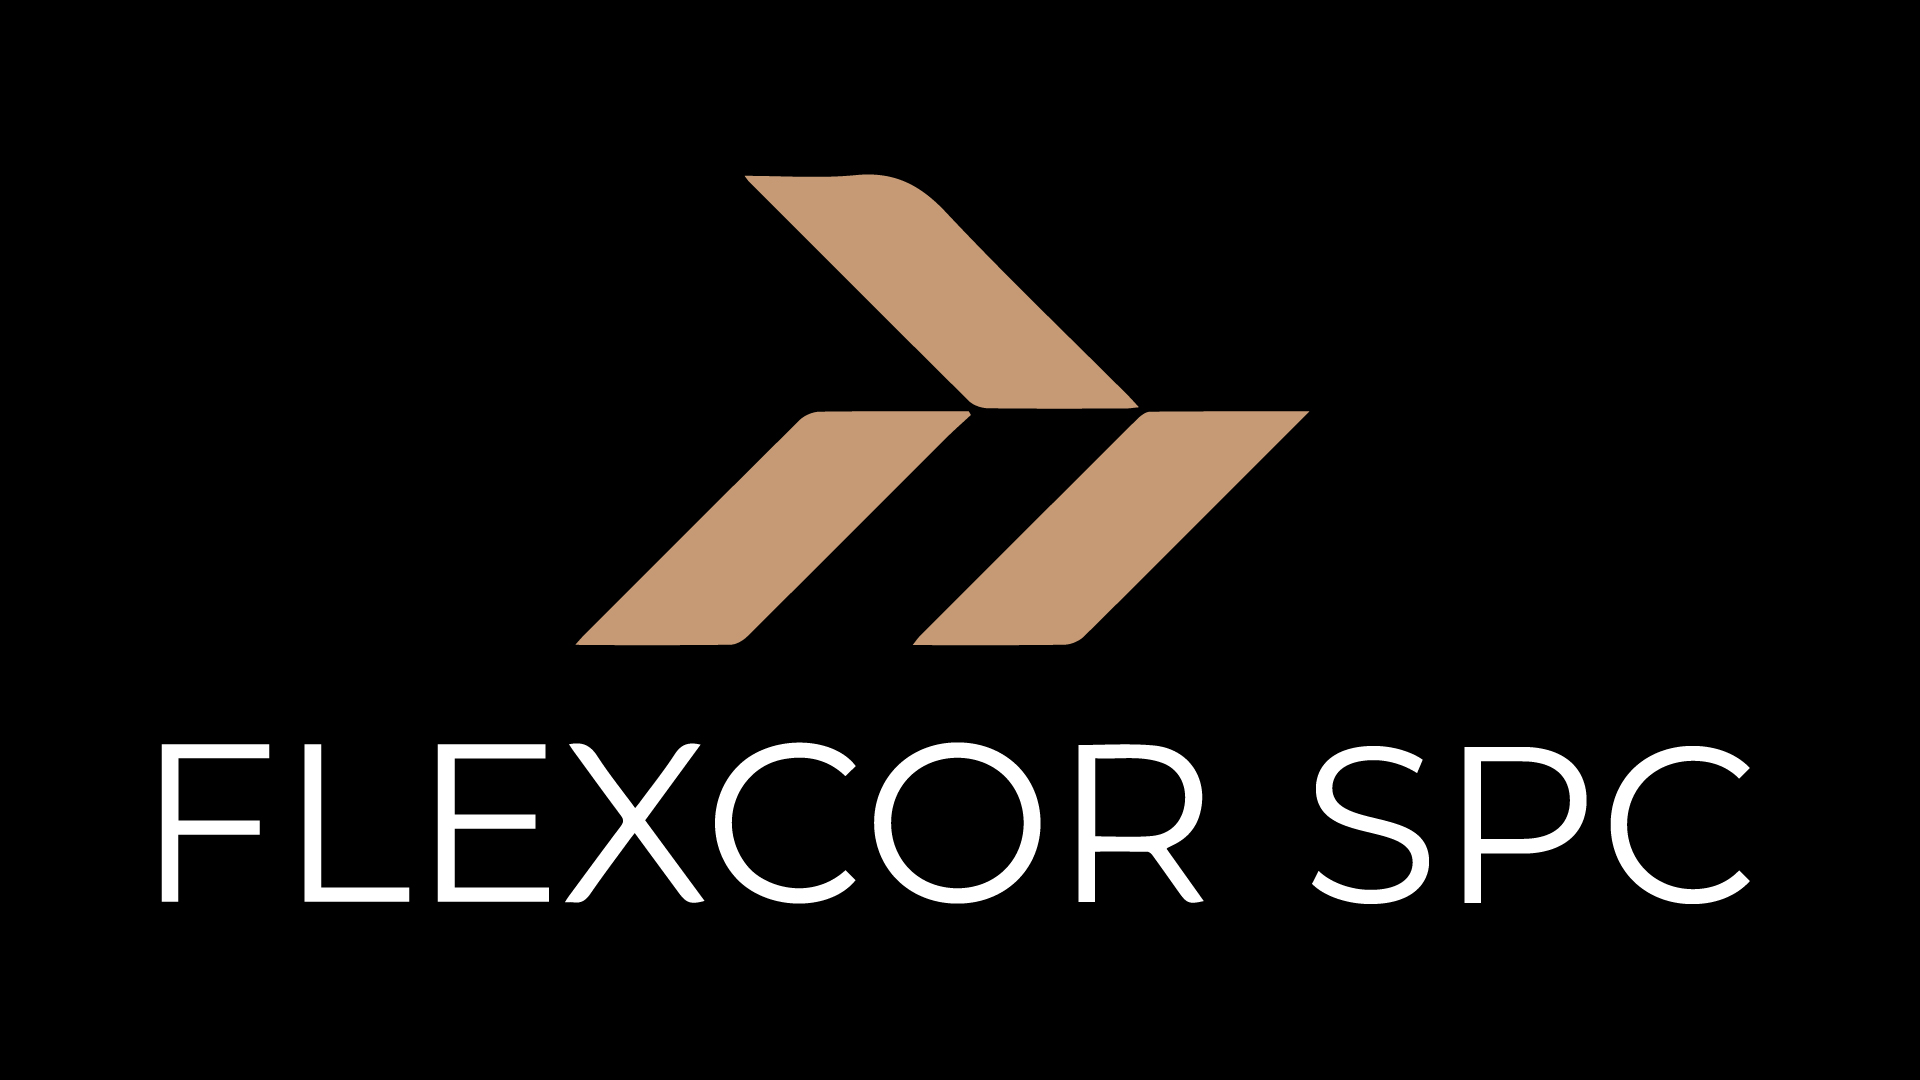 Flexcor SPC